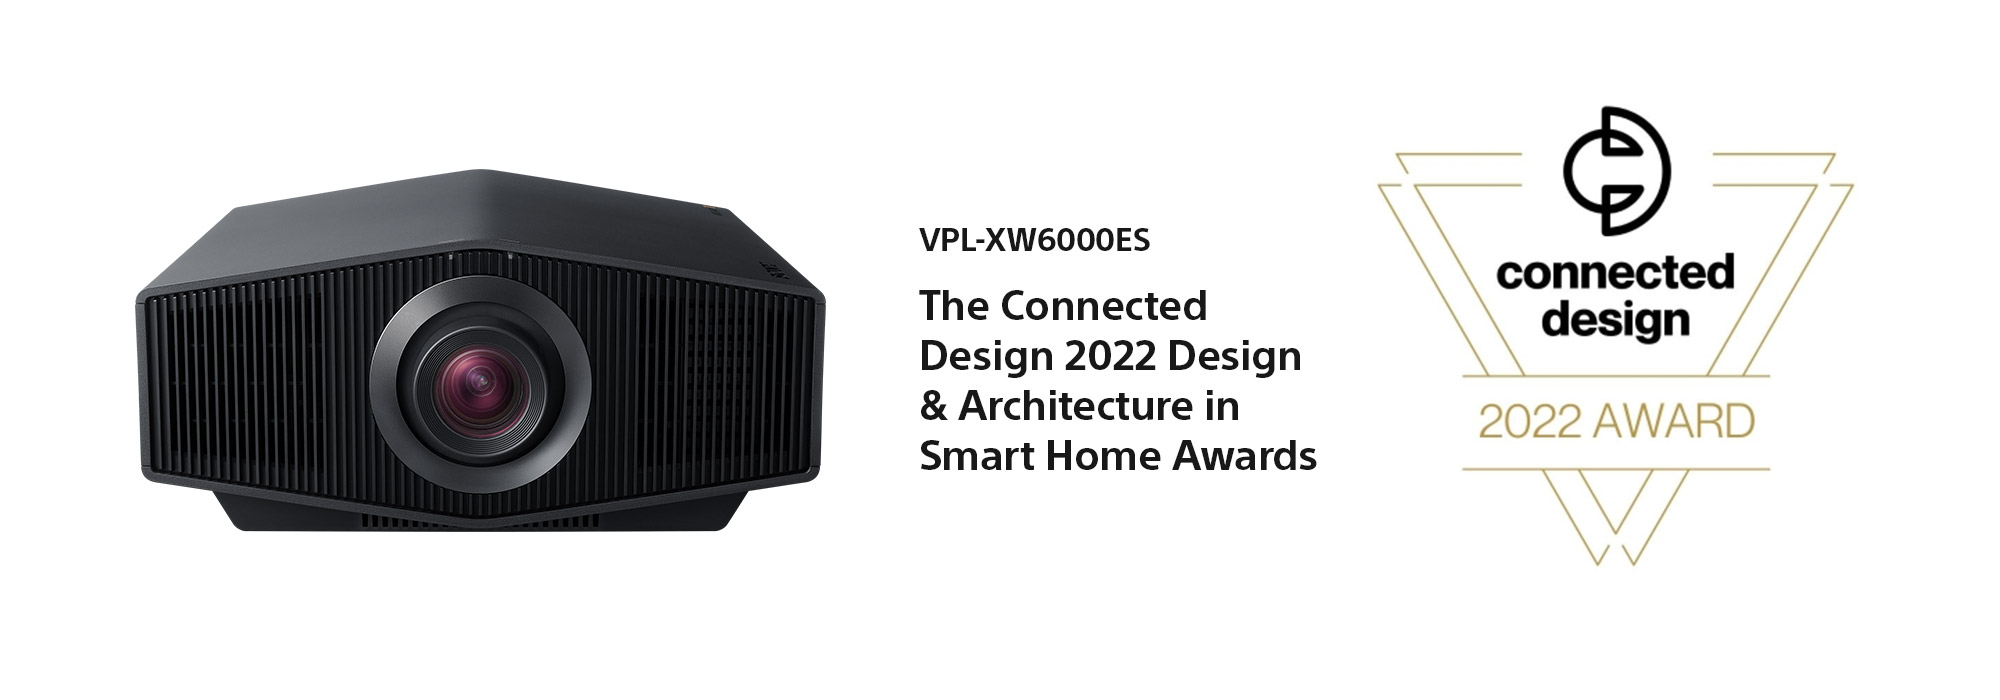 Projector Awards XW6000ES